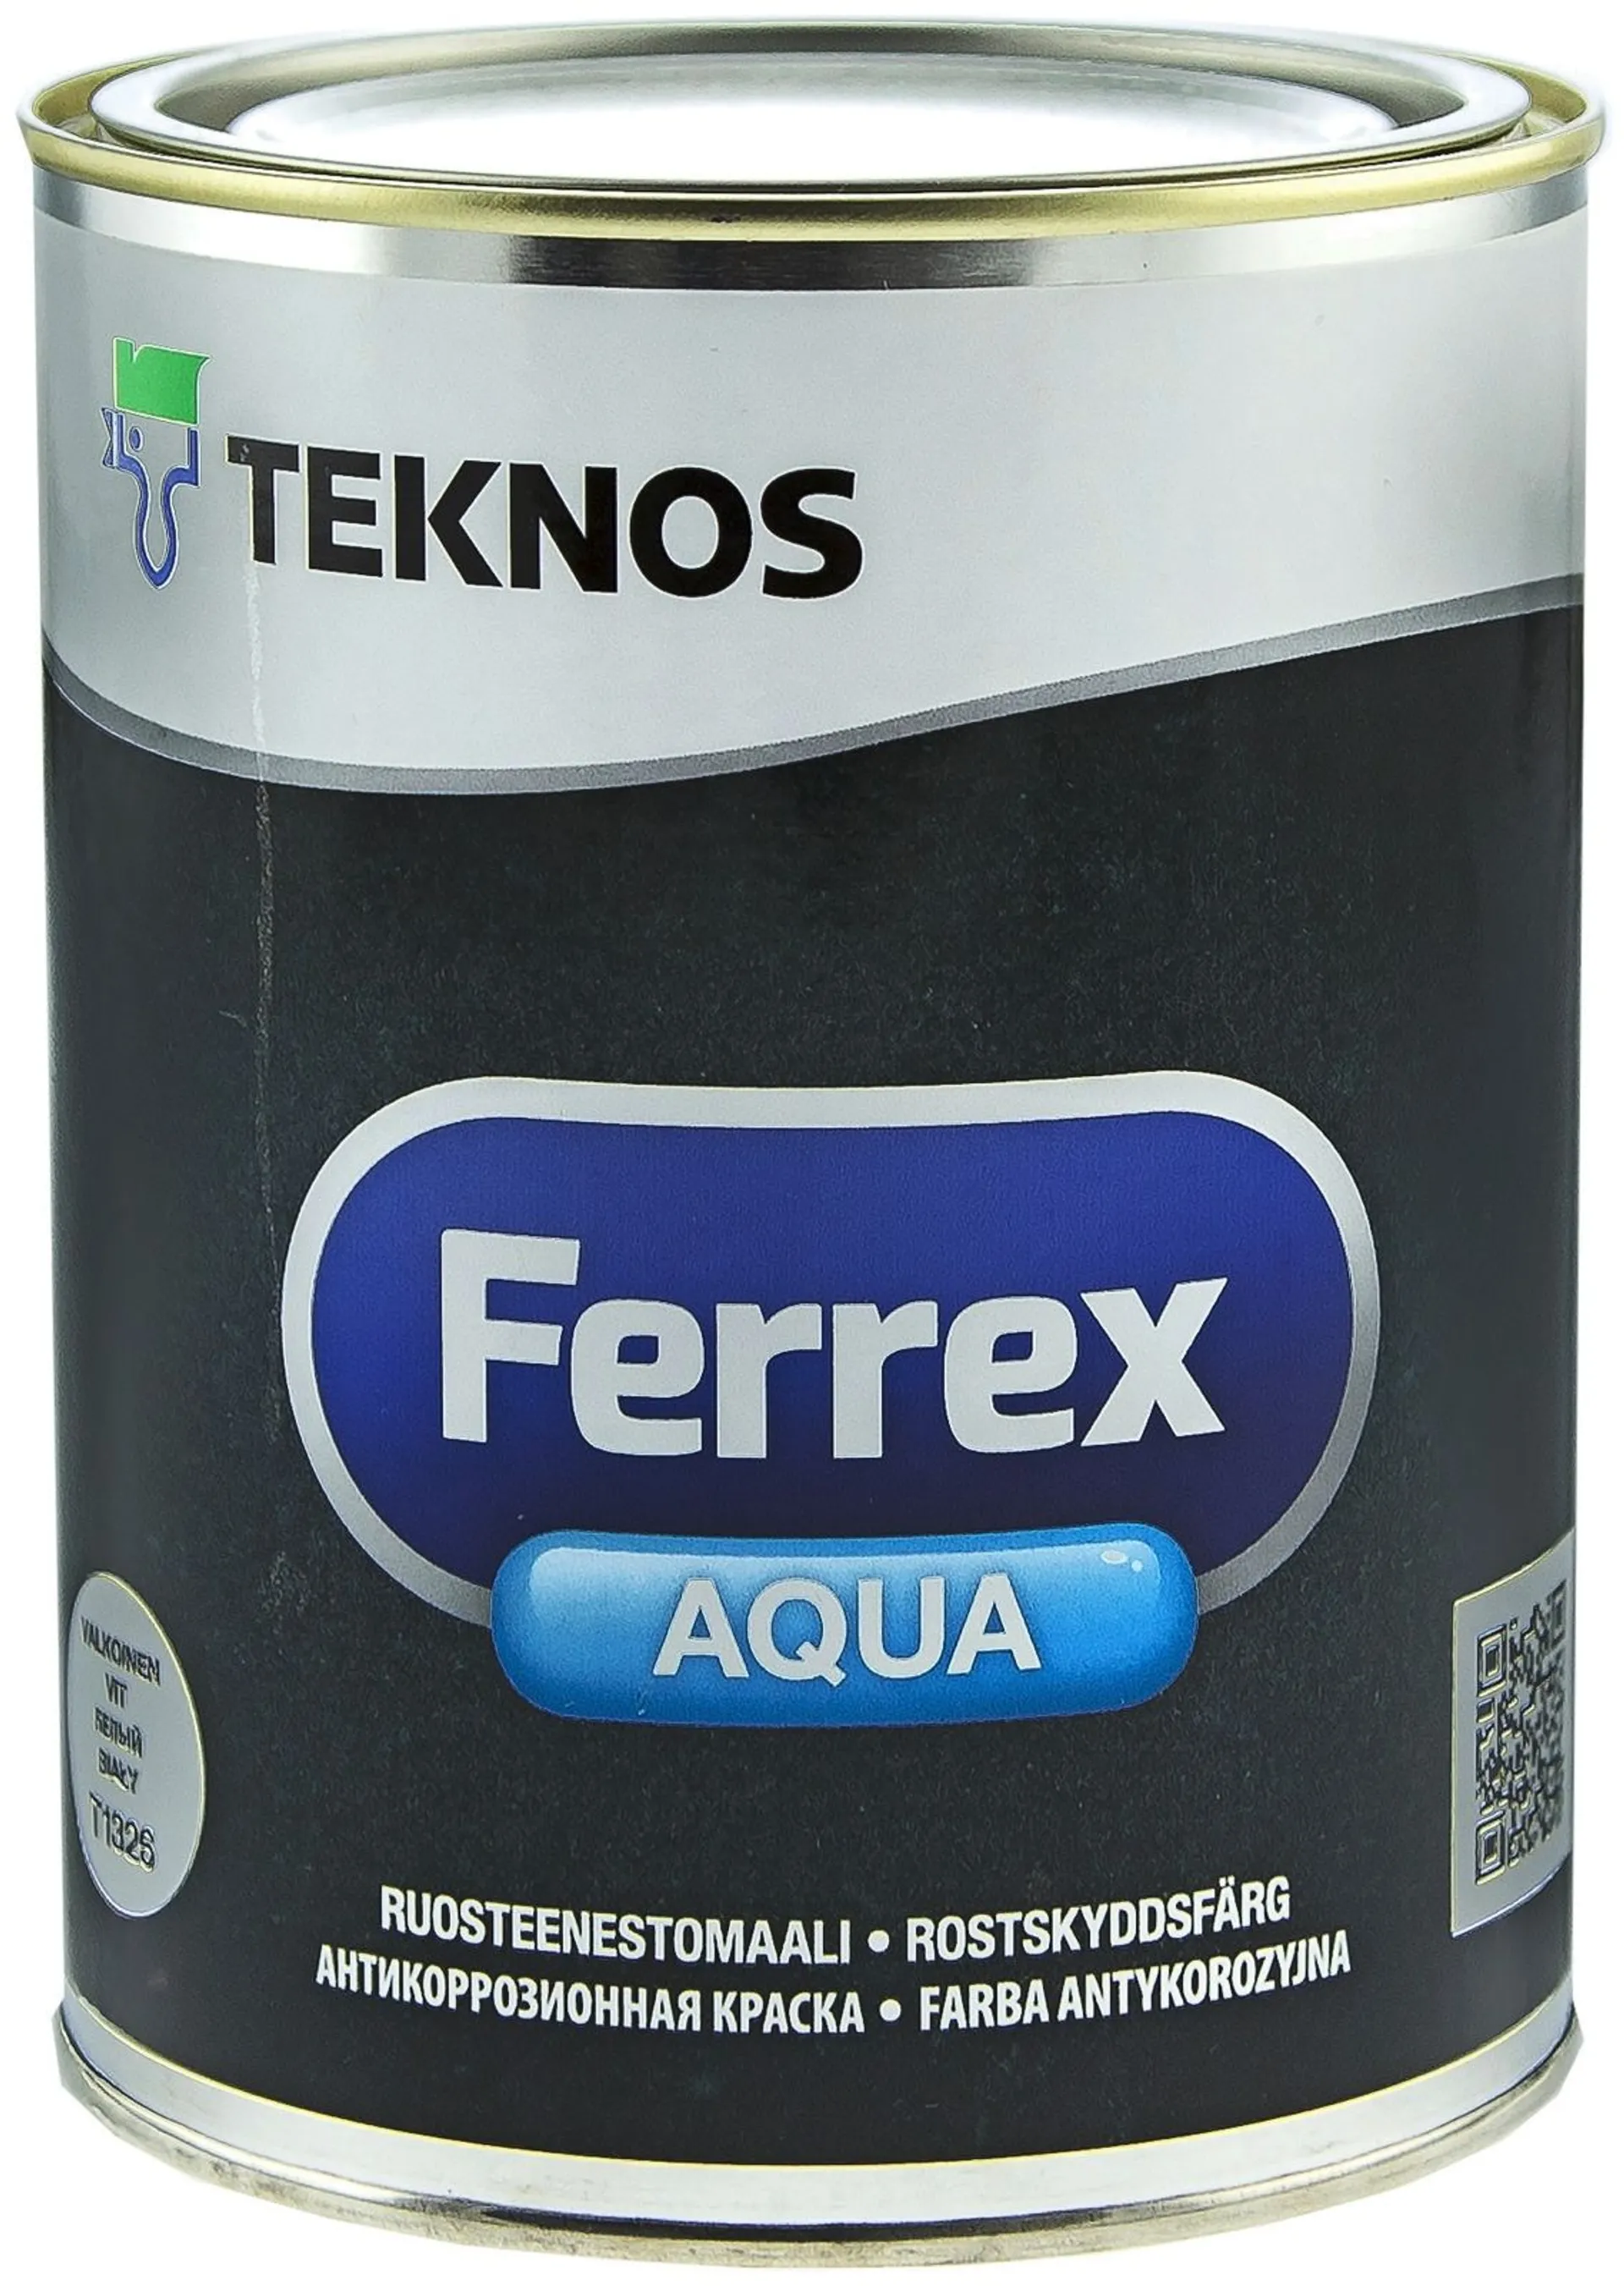 Teknos Ferrex Aqua ruosteenestomaali 1l valkoinen